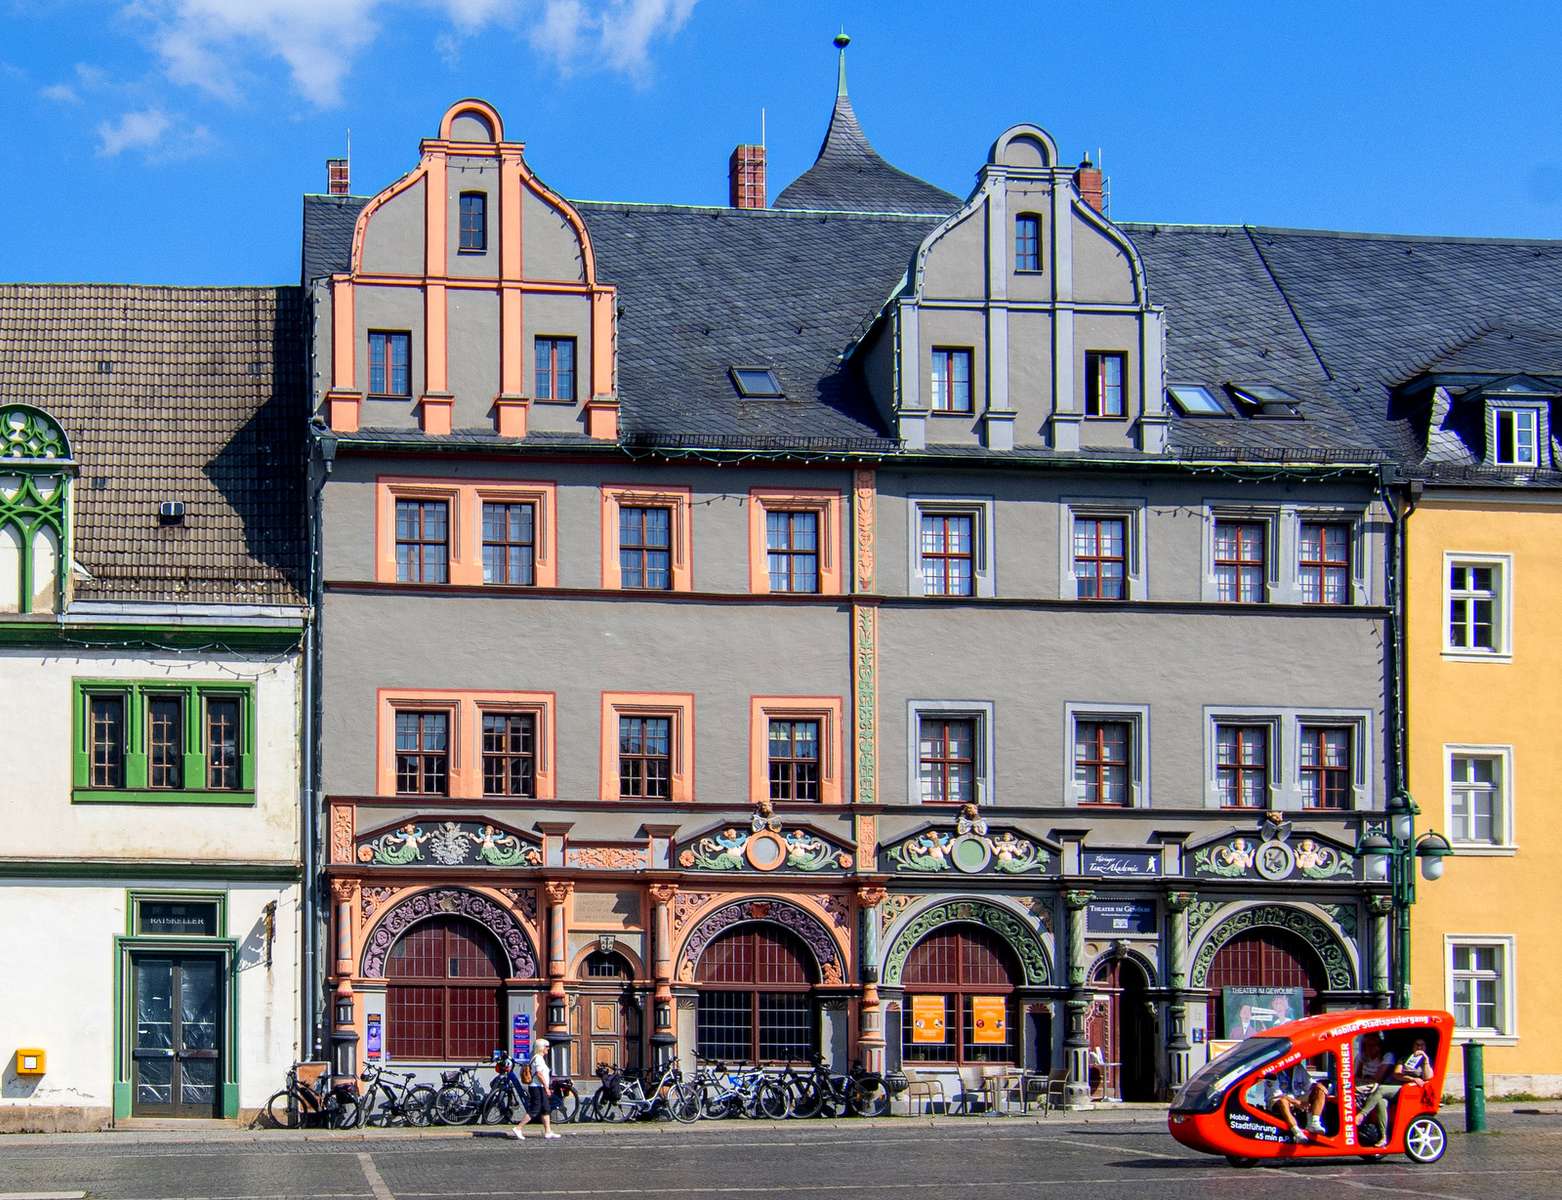 Dimore storiche sulla piazza del mercato di Weimar (Germania) puzzle online